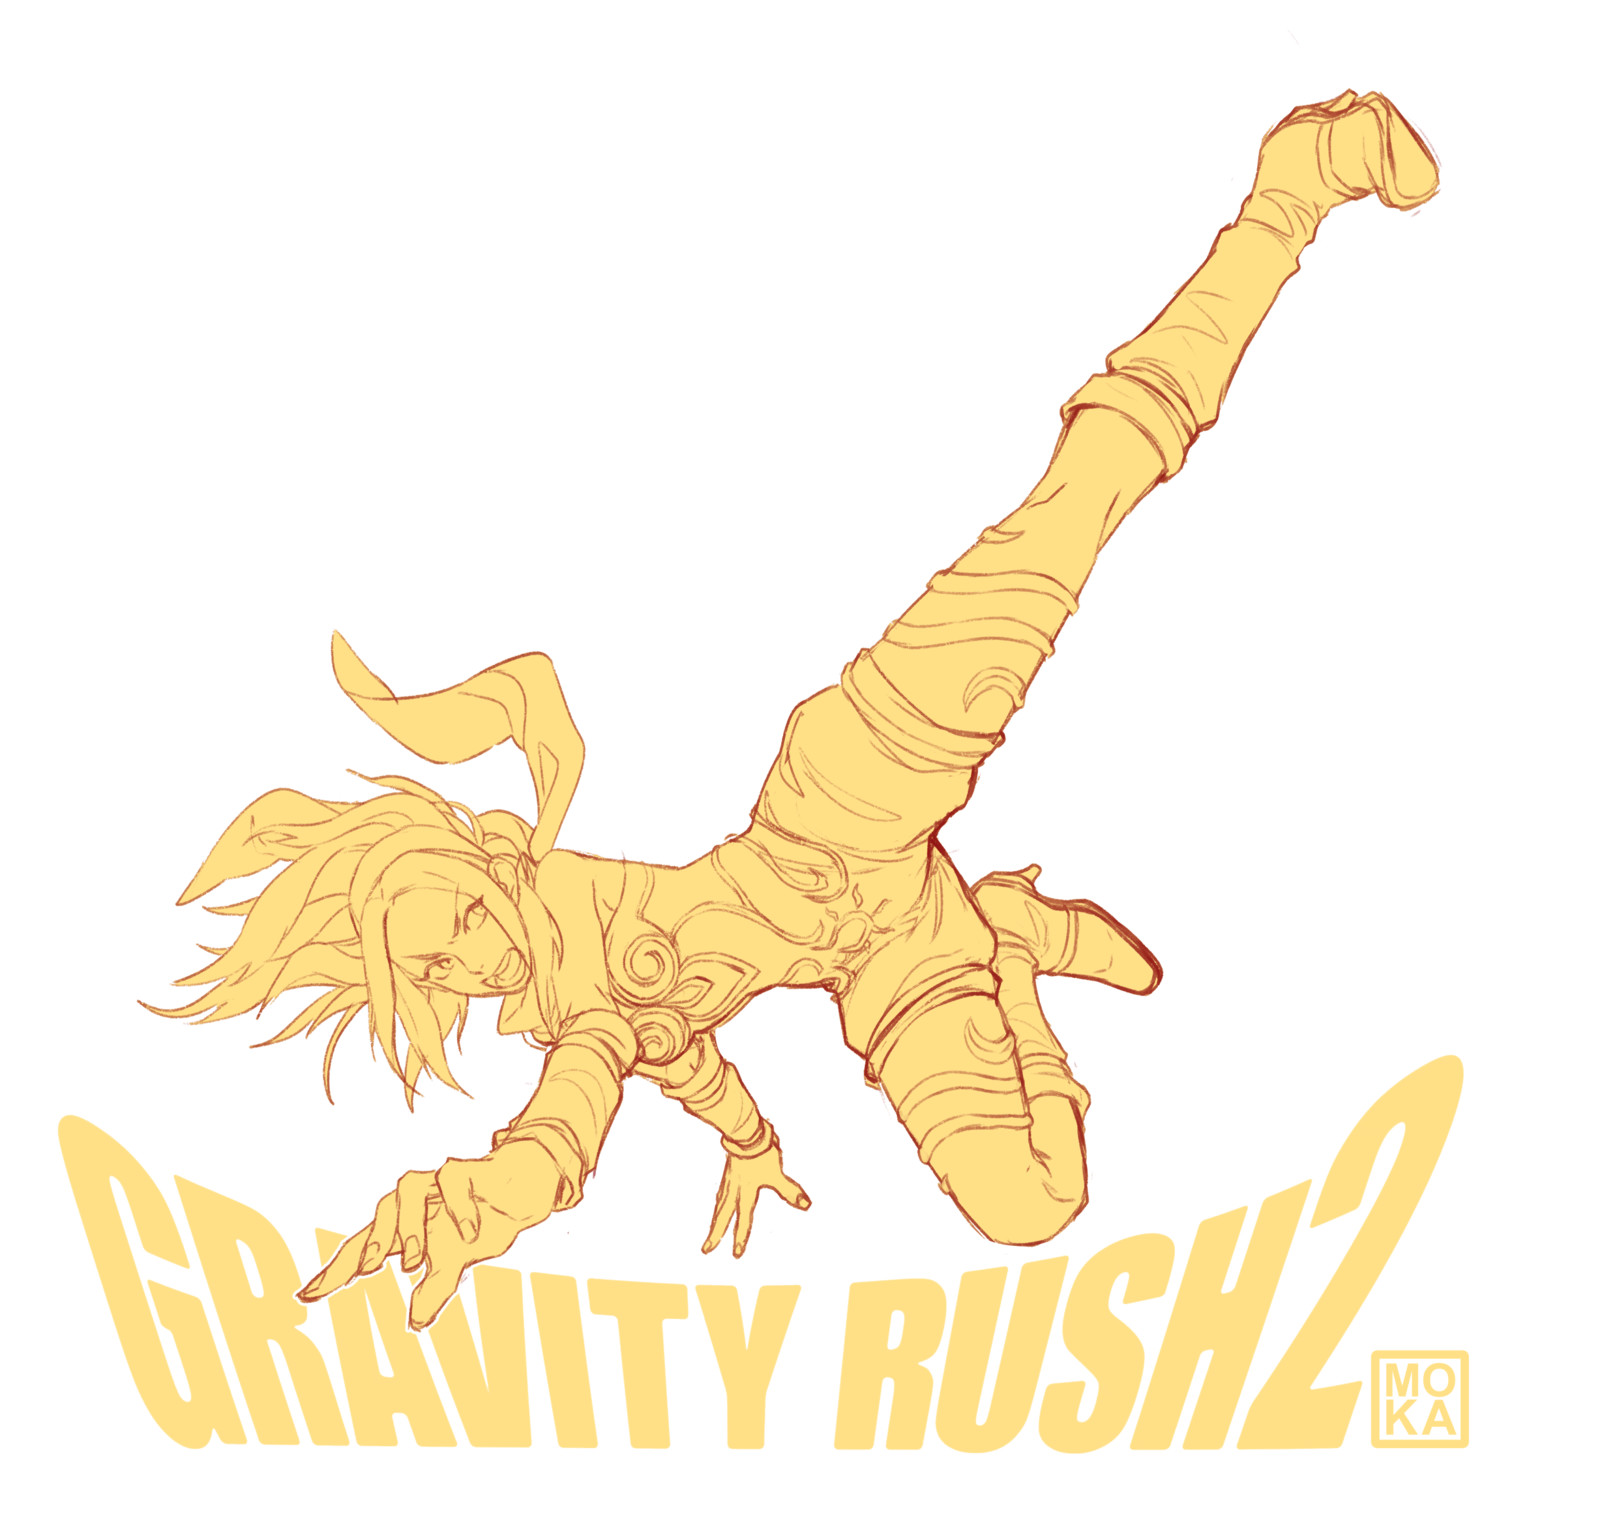 Gravity Rush Fan Art.